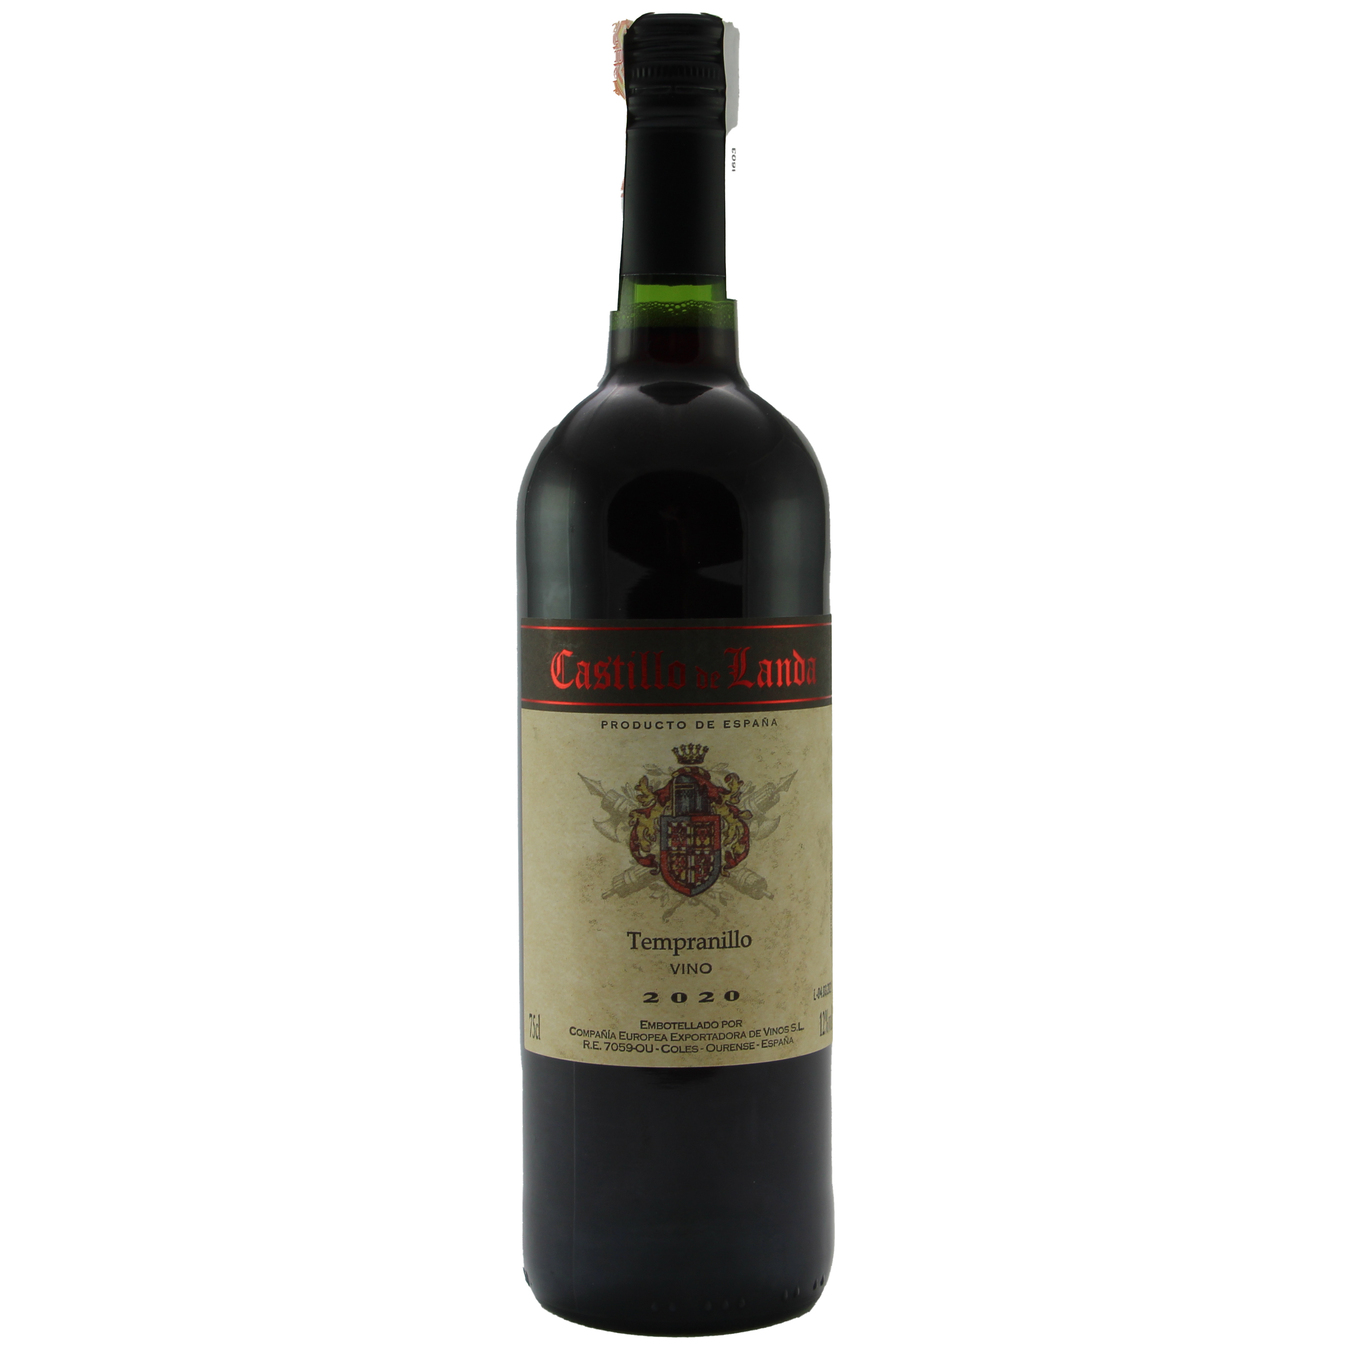 Вино Castillo de landa Temranillo червоне сухе 12% 0,75л